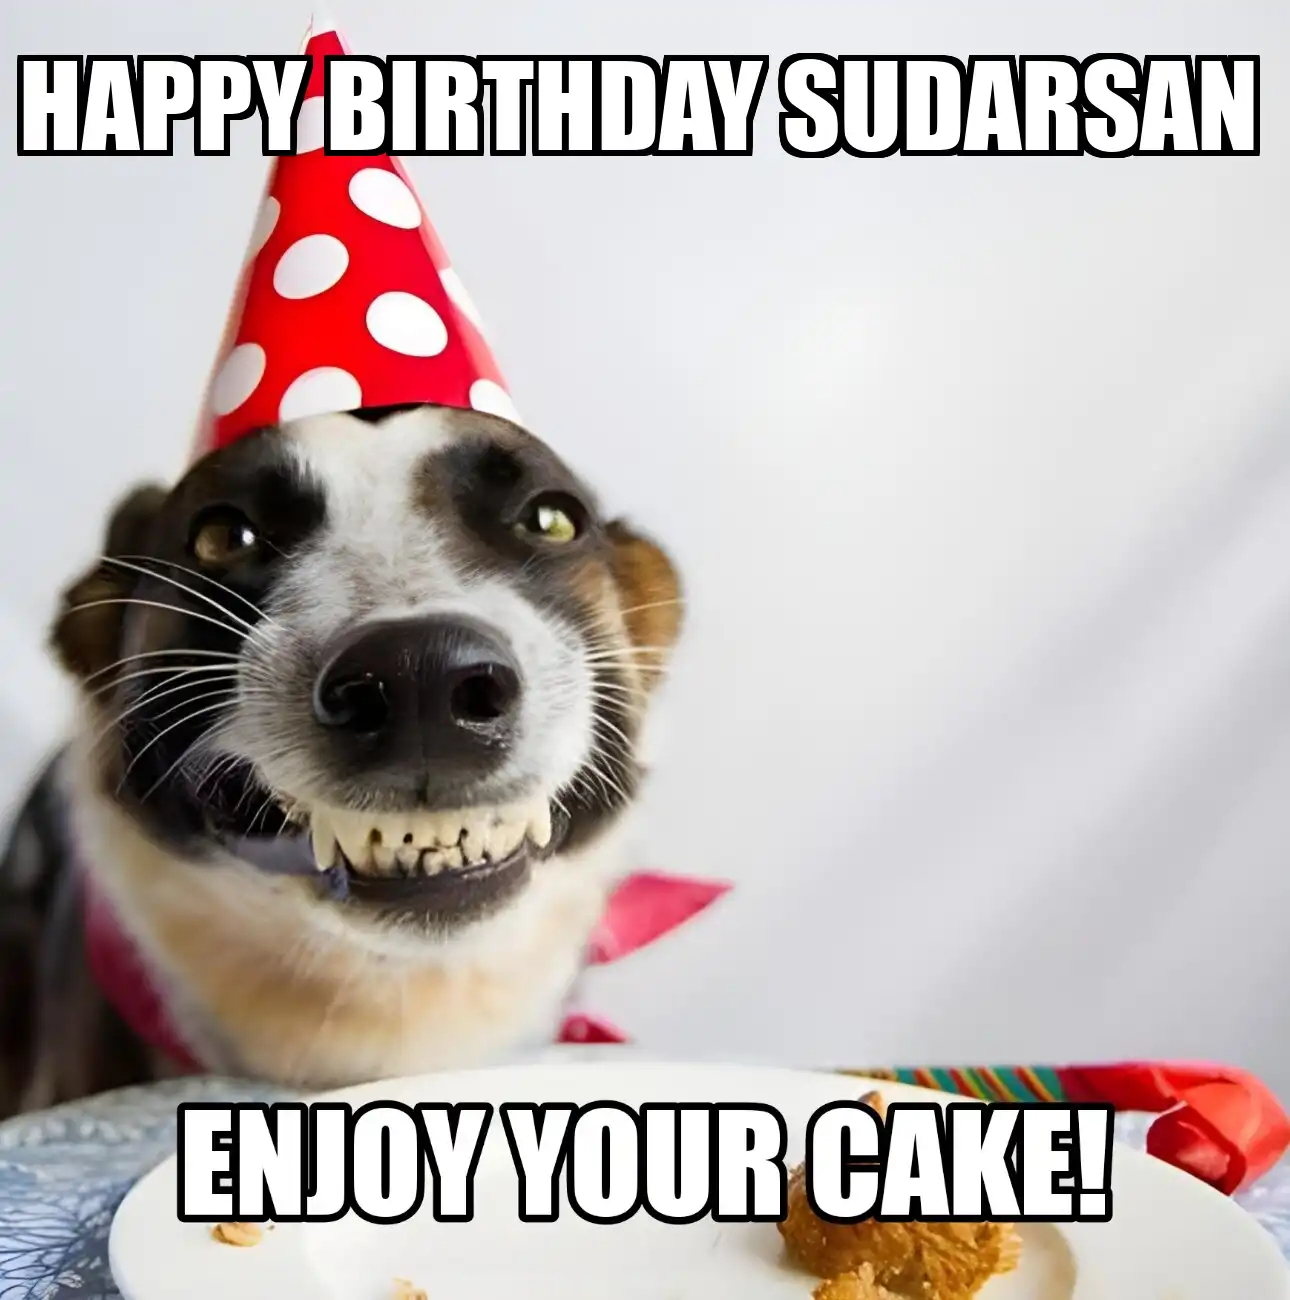 Happy Birthday Sudarsan Enjoy Your Cake Dog Meme